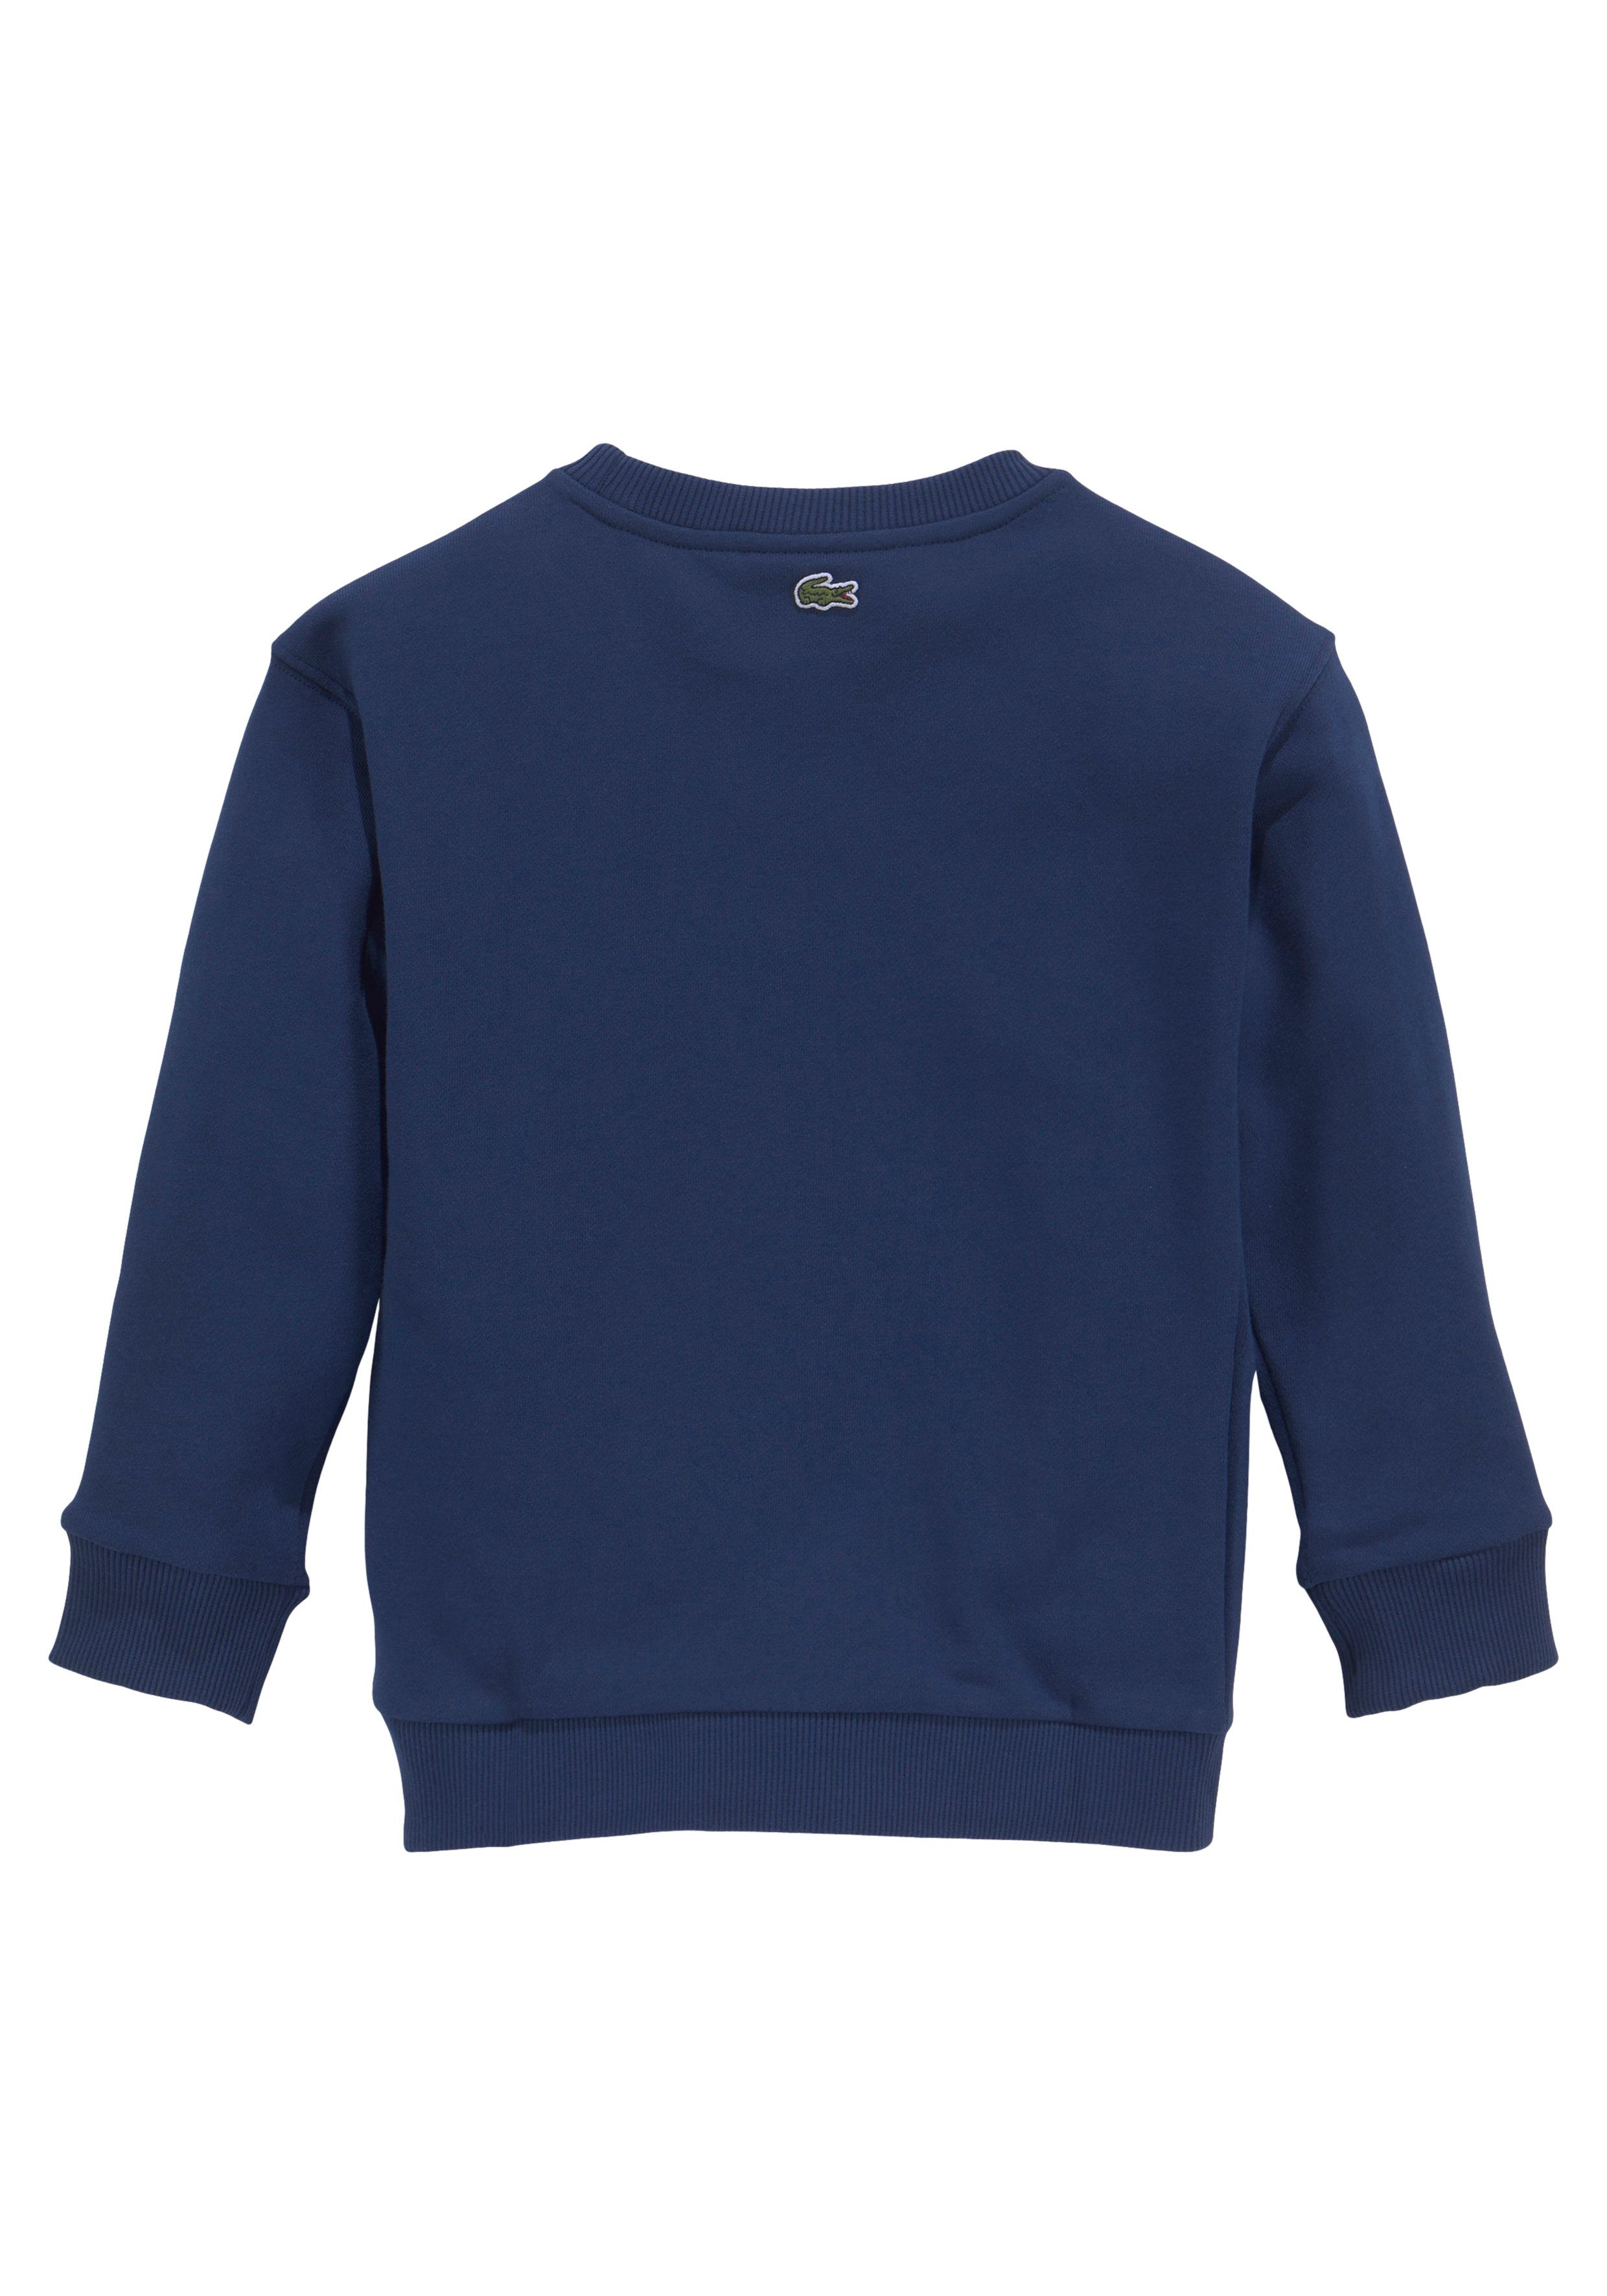 Lacoste Sweatshirt modernem MiniMe,mit Kinder Kids auf Brust Junior Labeldruck der blau